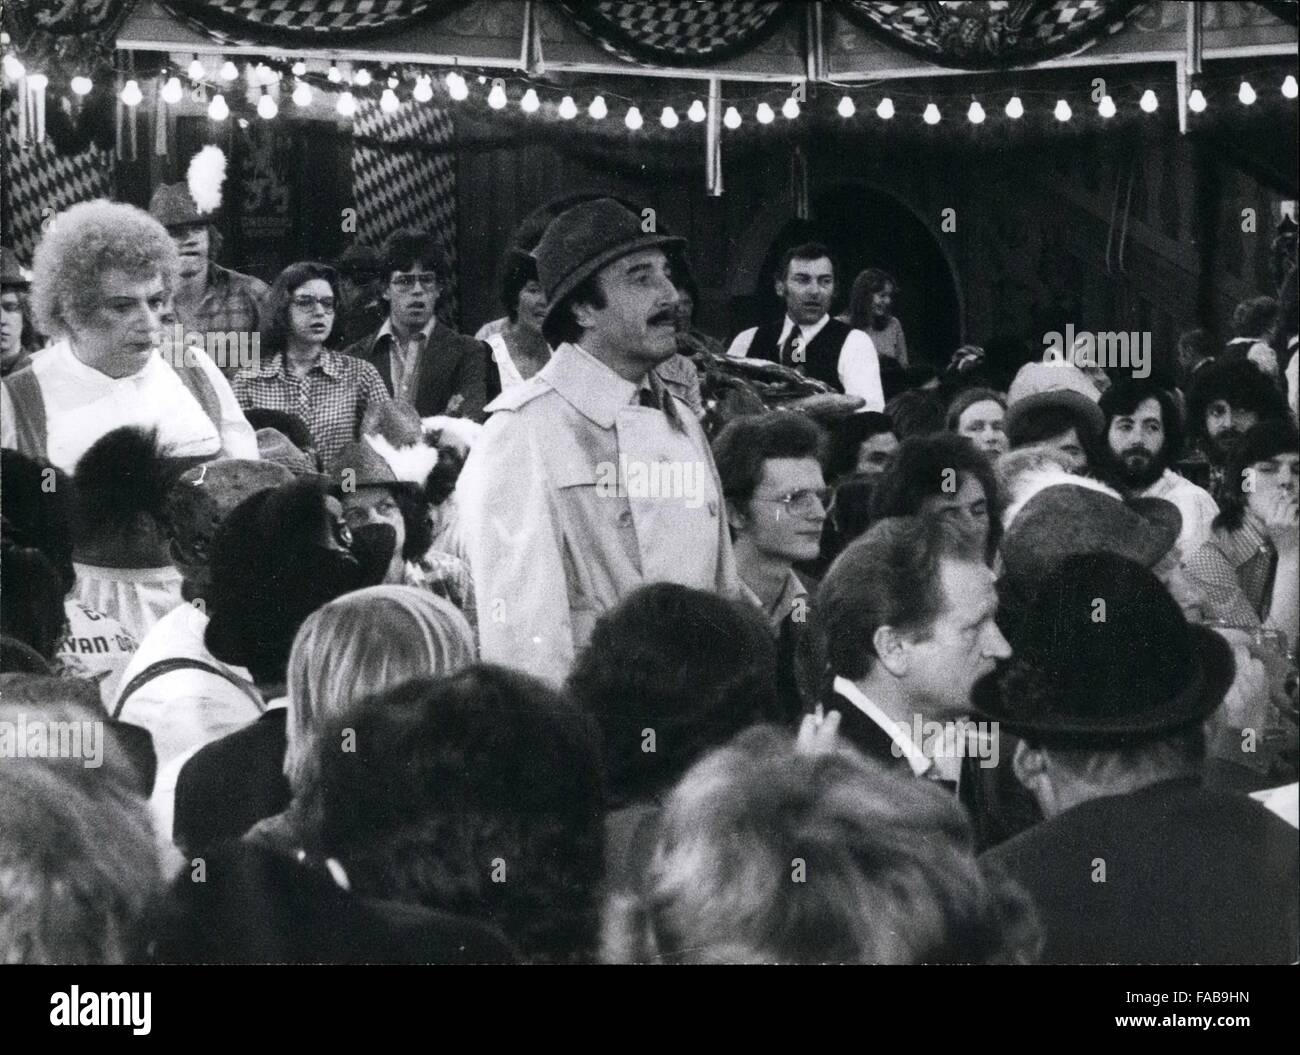 1979 - Schauspieler Peter Sellers Filme in München: die erste Scens ein neues, spannendes Abenteuer von Inspektor Clouseau, gespielt von britischen Schauspieler Peter Sellers (Bild, im Zentrum) sind derzeit in München gemacht. In einem Bier-Hochburg der bayerischen Hauptstadt ein Samll '' Oktoberfest'' eingeleitet wurde oder die Funktion der Pink Panther-Streiks erneut aufgerufen '' (kostet 12 Mio. DM). Unter der Regie von Blake Edwards, spielt der beliebte Komiker wieder sehr gespannt aber eher ungeschickt Detektiv mit Schnurrbart und die unvermeidlichen Trenchcoat. Das Bild wird voraussichtlich am Weihnachten dieses y veröffentlicht Stockfoto